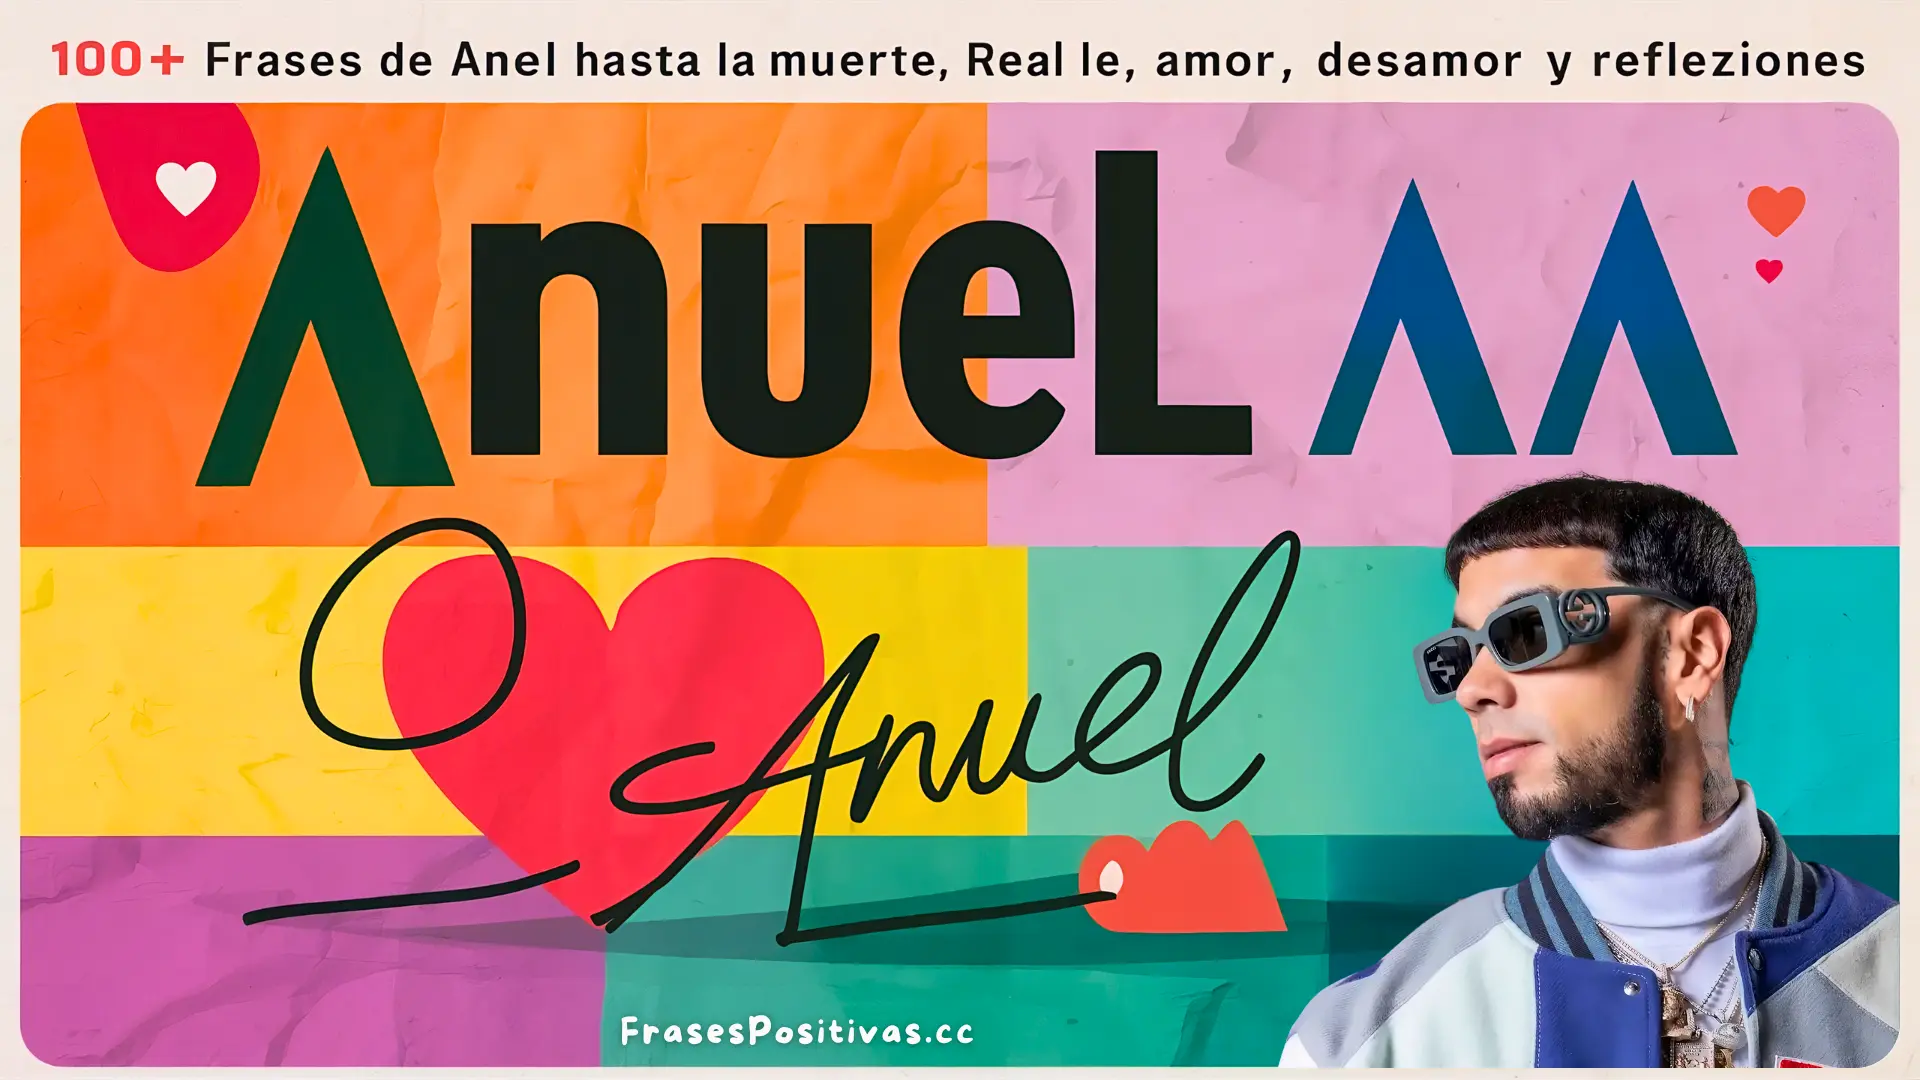 100+ Frases de Anuel AA: Real Hasta la Muerte, Amor, Desamor y Reflexiones